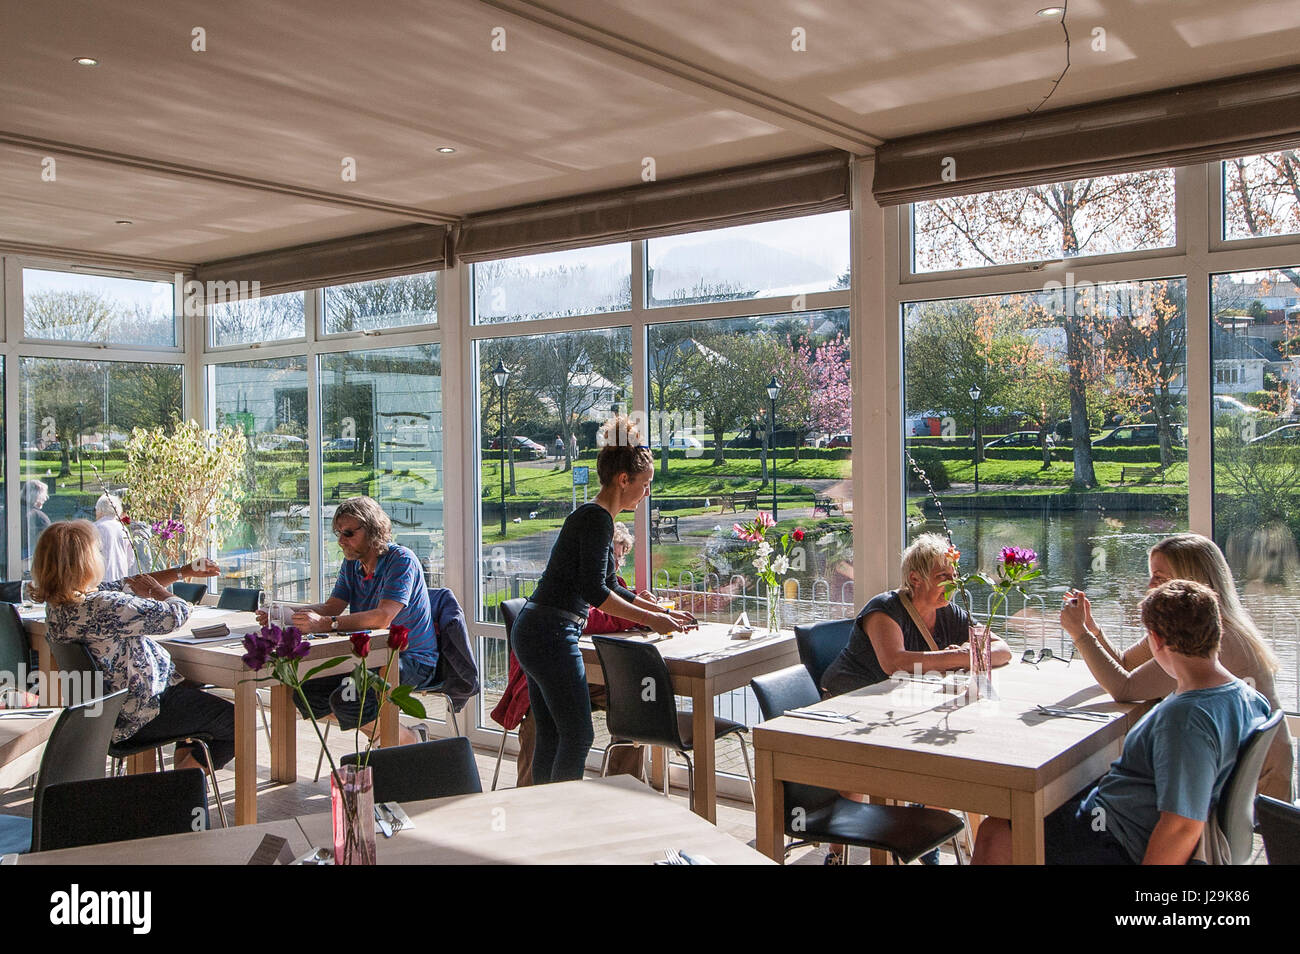 Restaurant Les clients de l'intérieur des murs en verre Tables serveuse Personnes Newquay Cornwall Banque D'Images